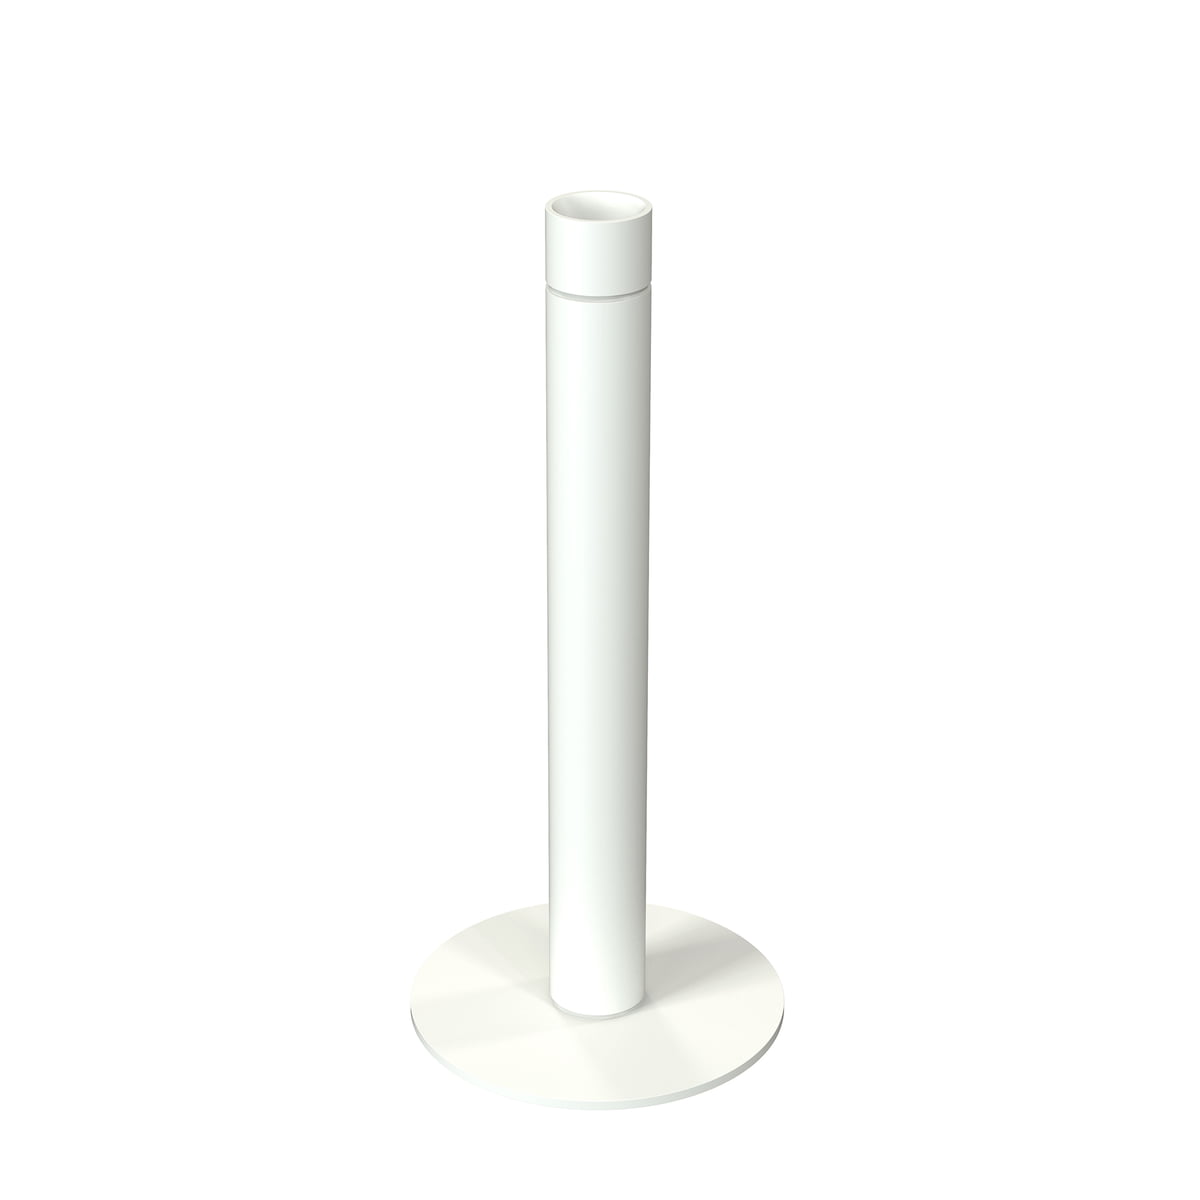 FROST - Küchenrollenhalter H 27,5 cm, weiß